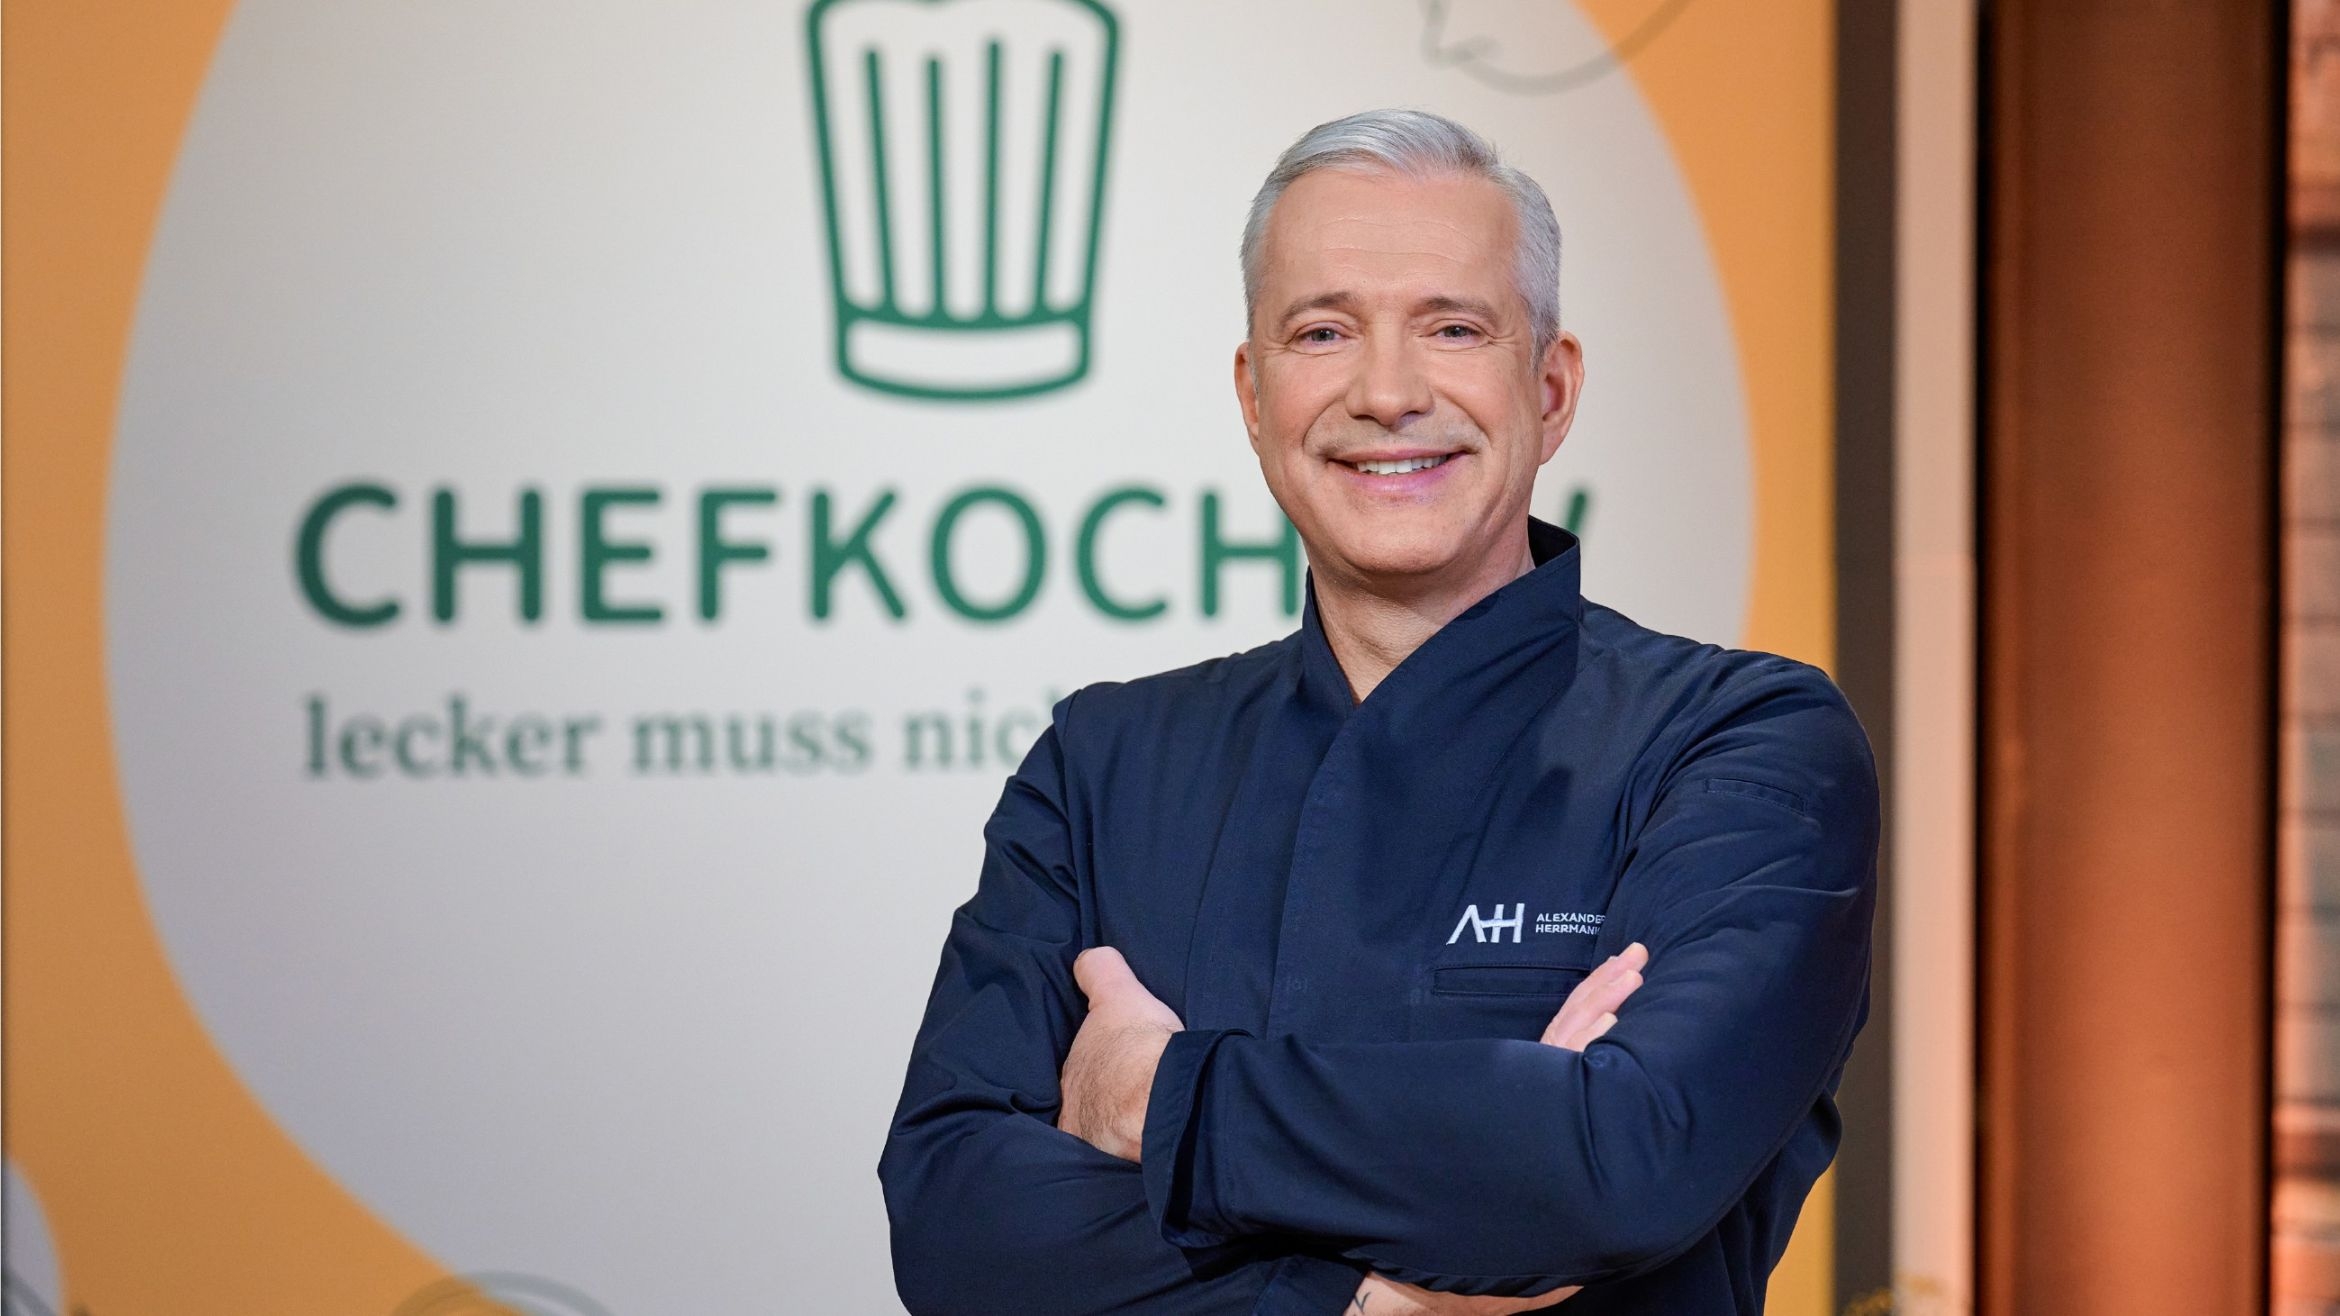 Alexander Herrmann moderiert "Chefkoch TV" –